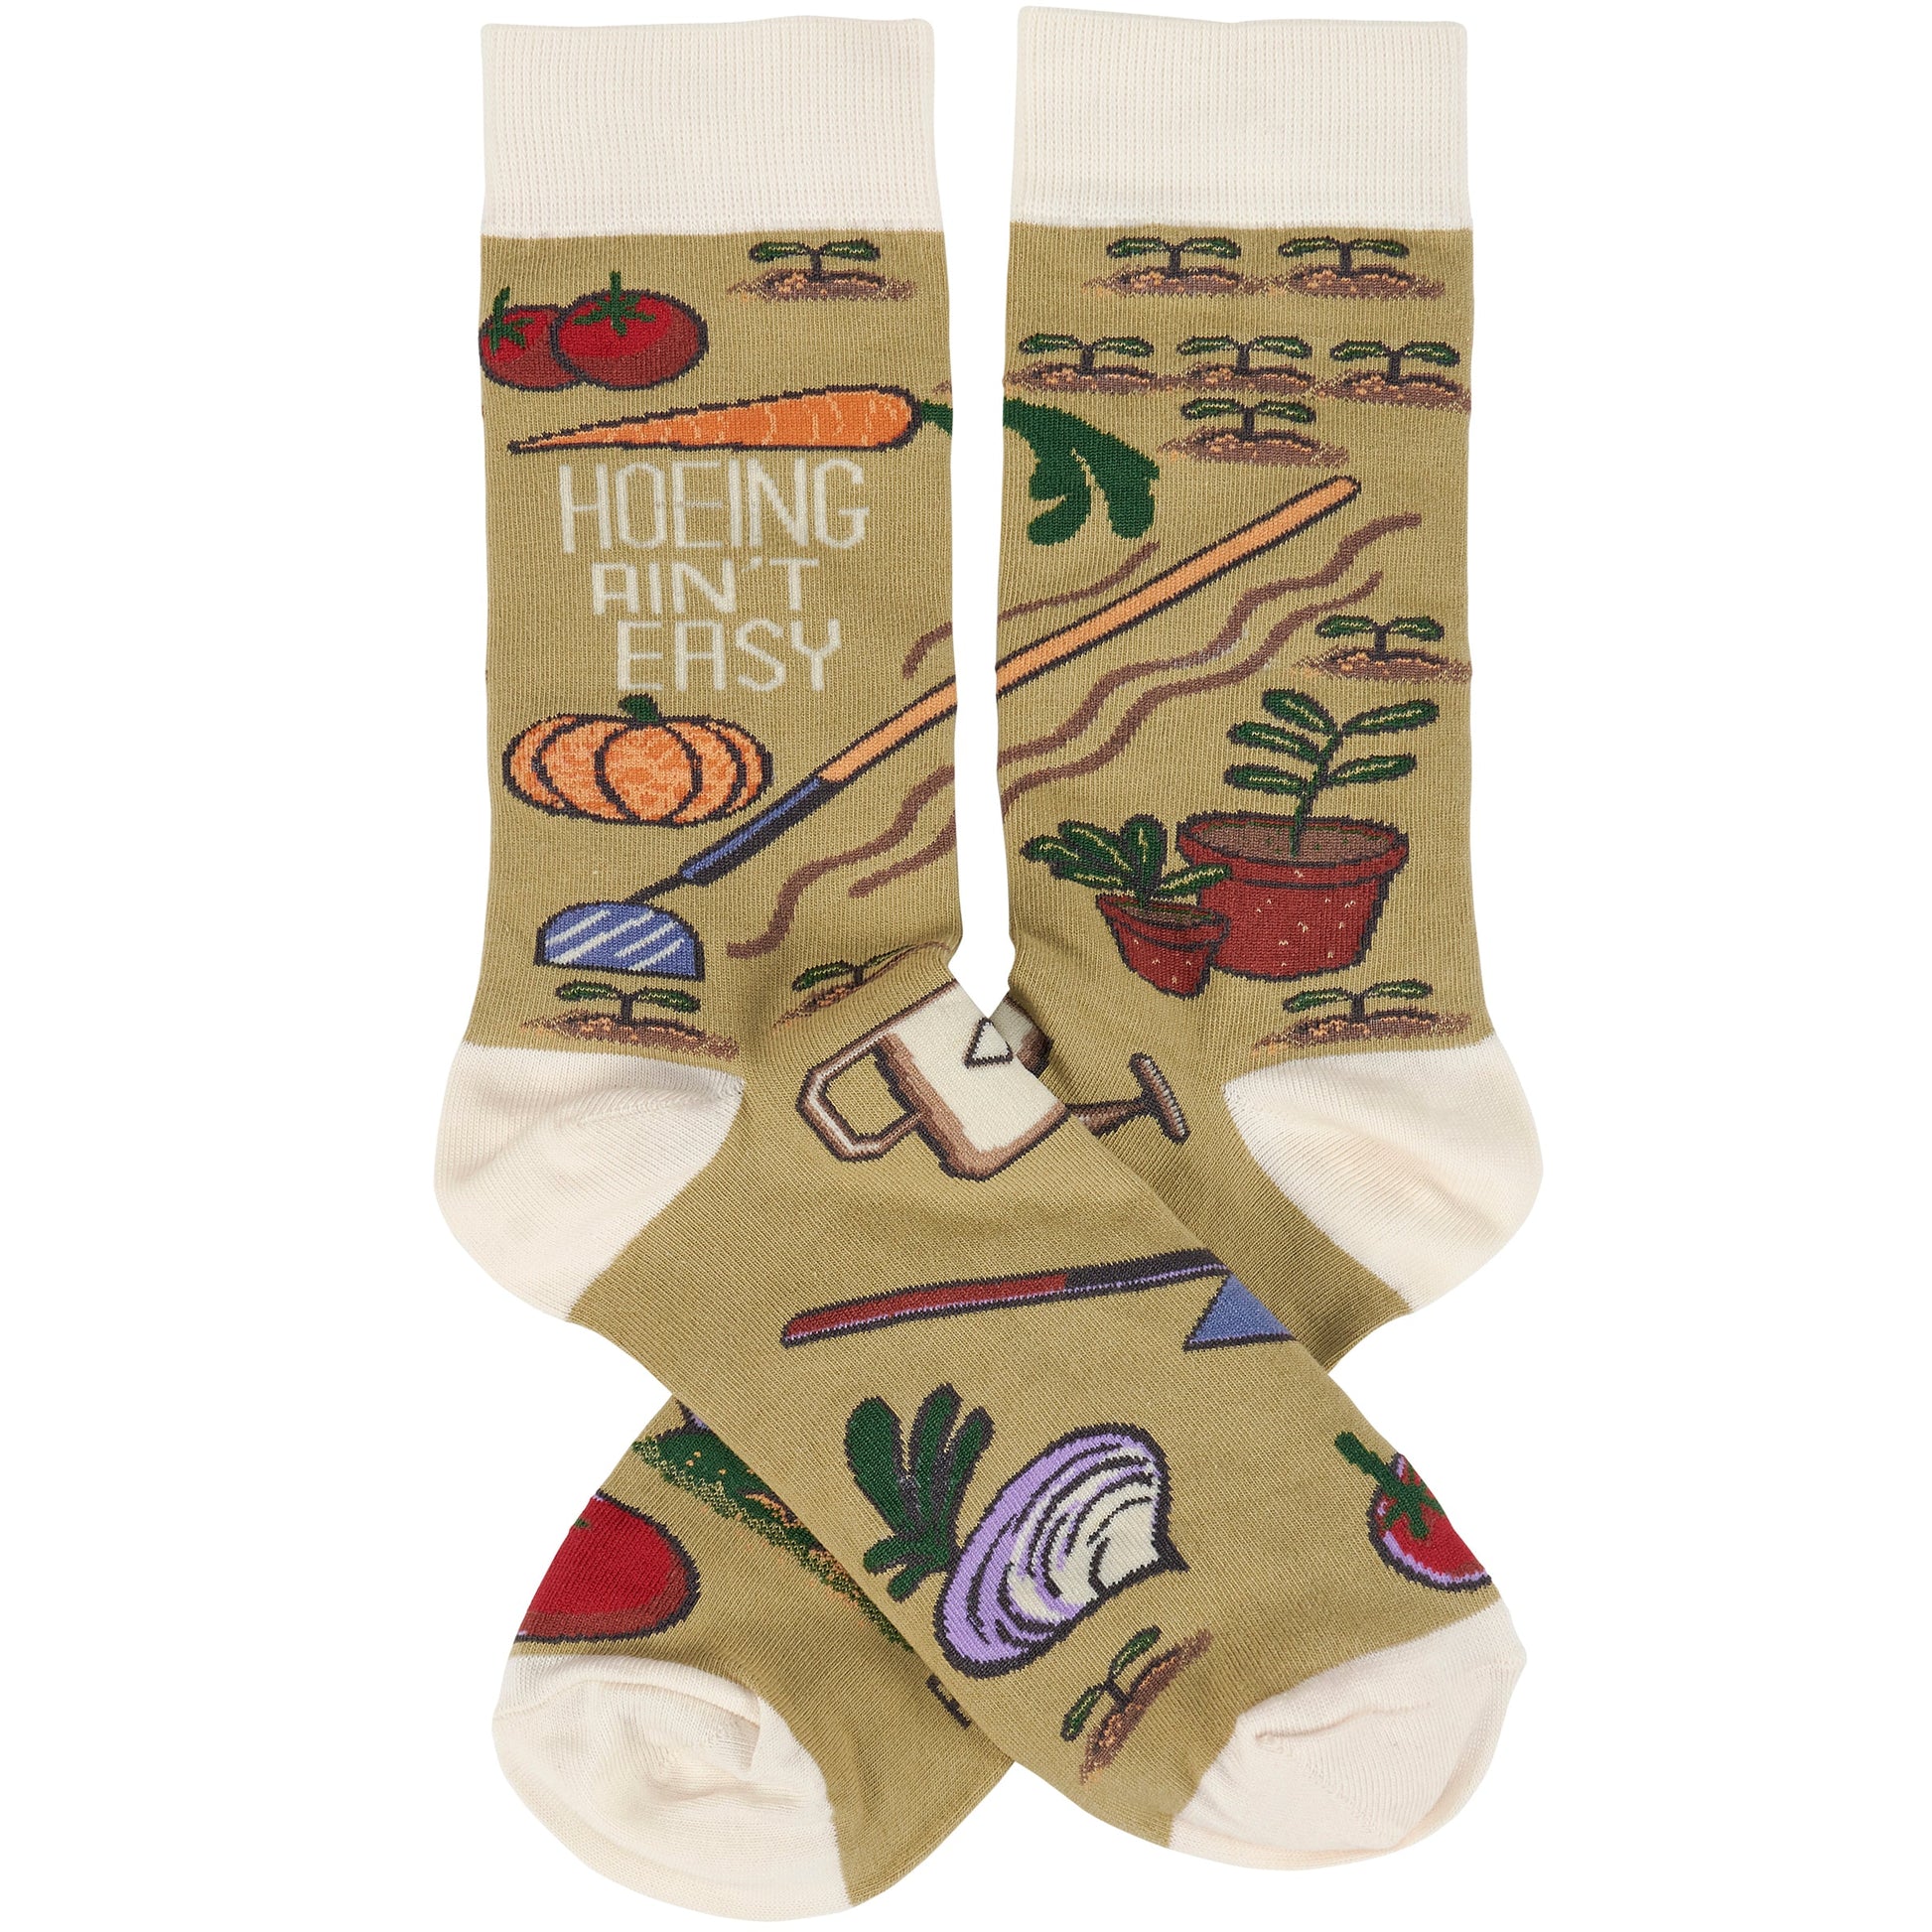 Hoeing Ain't Easy Women's Socks | Farm Themed Everyday Footwear